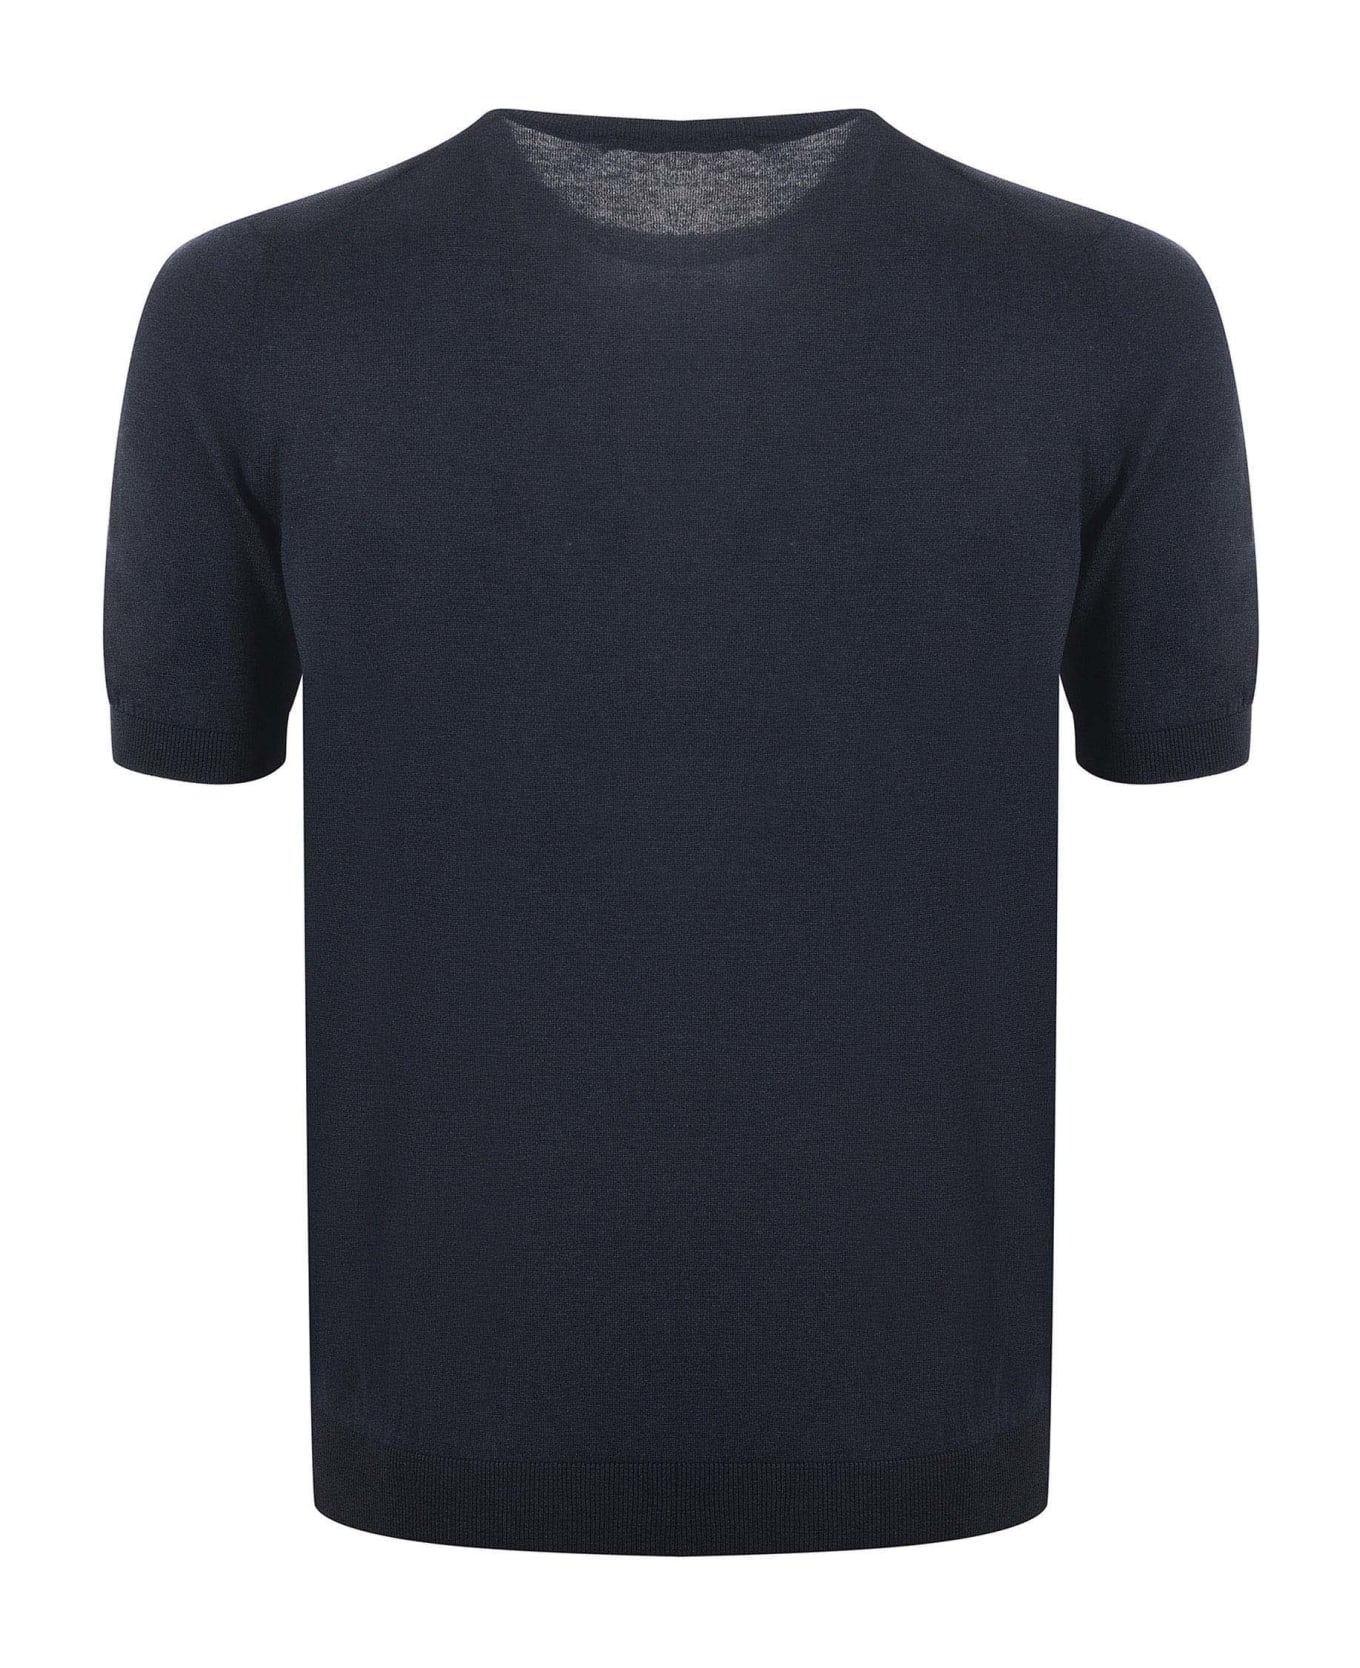 Tagliatore T-shirt - Blu melange シャツ